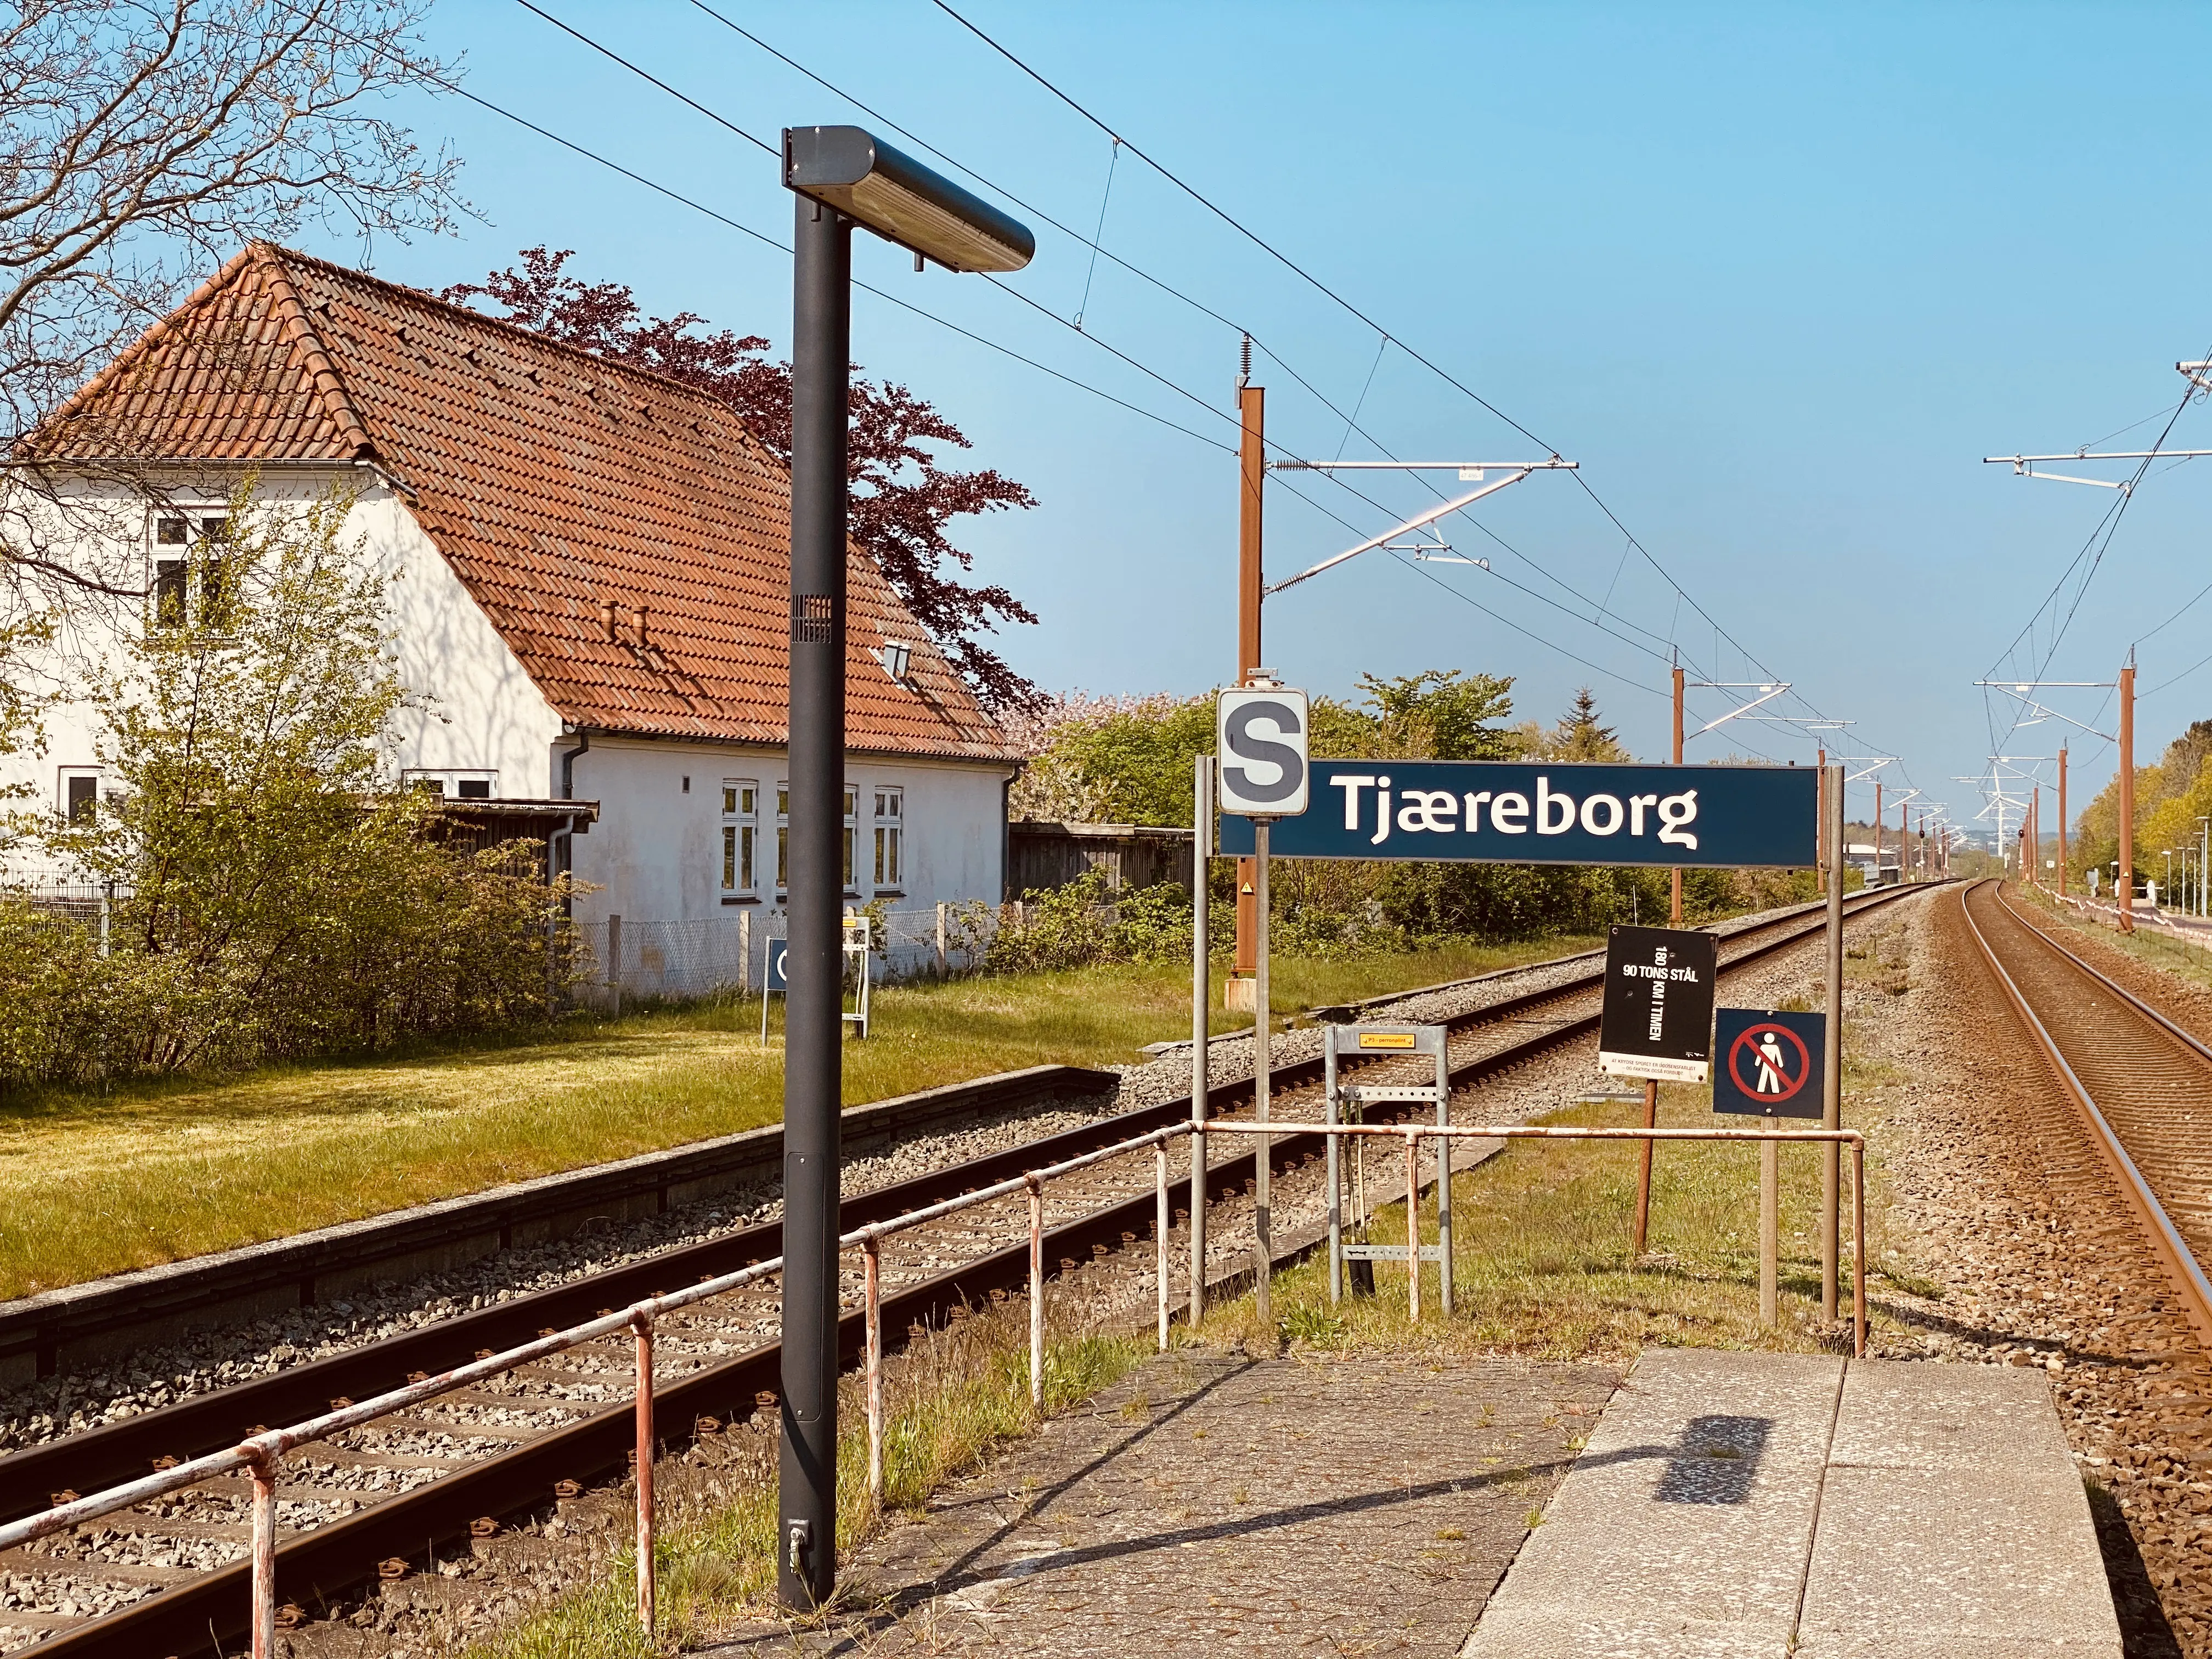 Billede af Tjæreborg Station, som er nedrevet og afløst af dette Trinbræt.